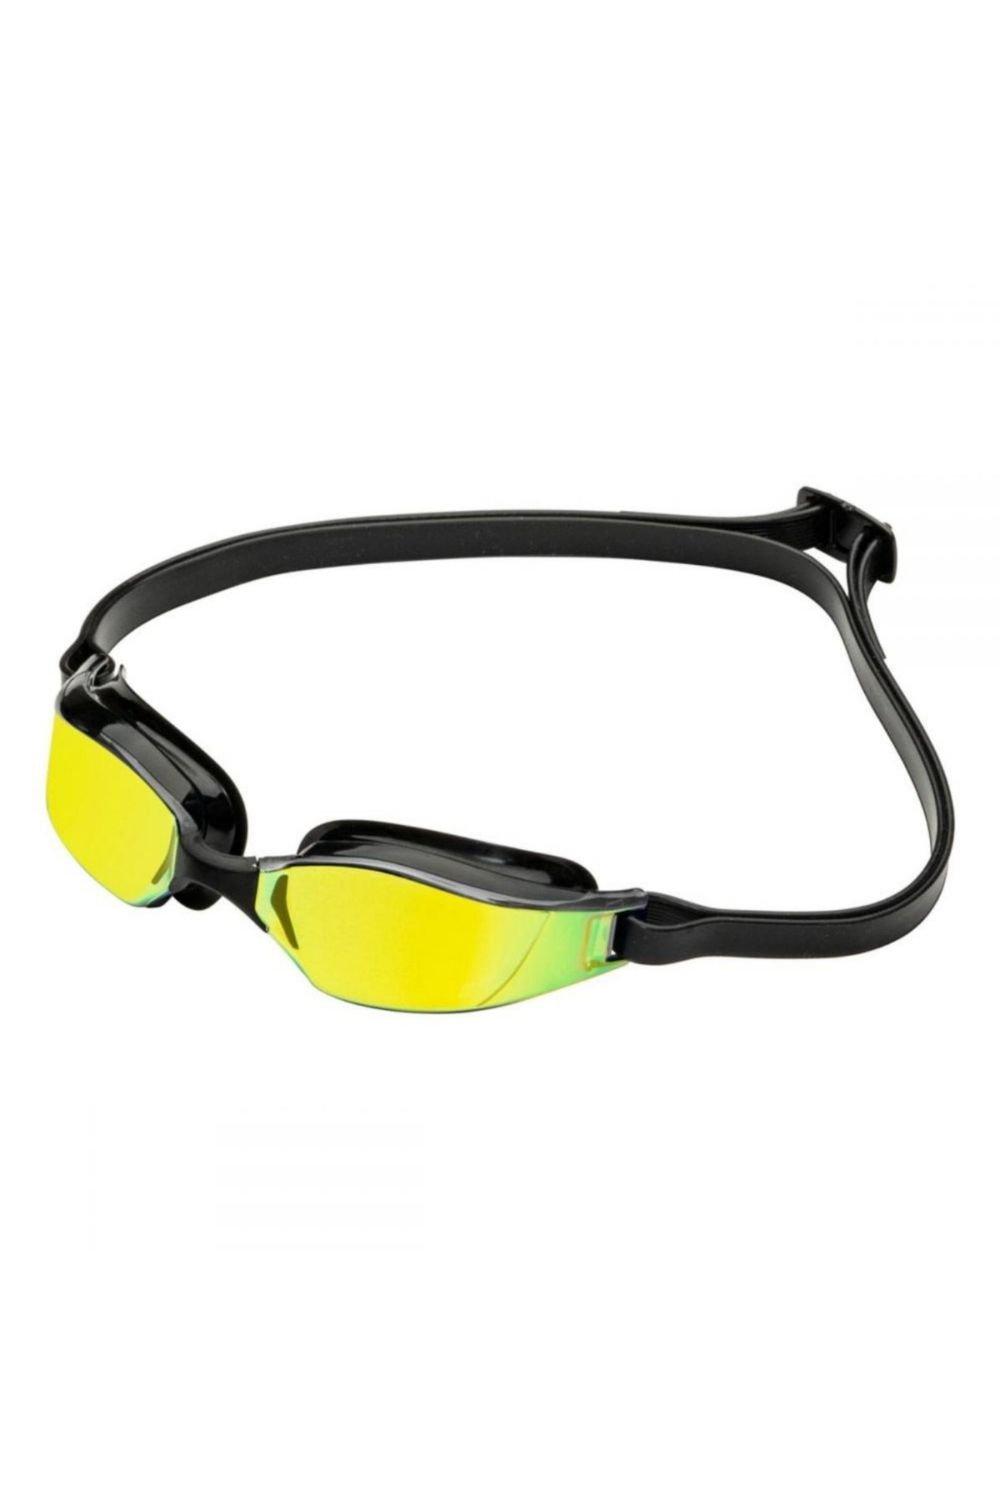 Титановые очки для плавания Xceed с зеркальными линзами Aquasphere, желтый очки для плавания водонепроницаемые противотуманные hd очки для плавания с градусом очки для дайвинга для женщин